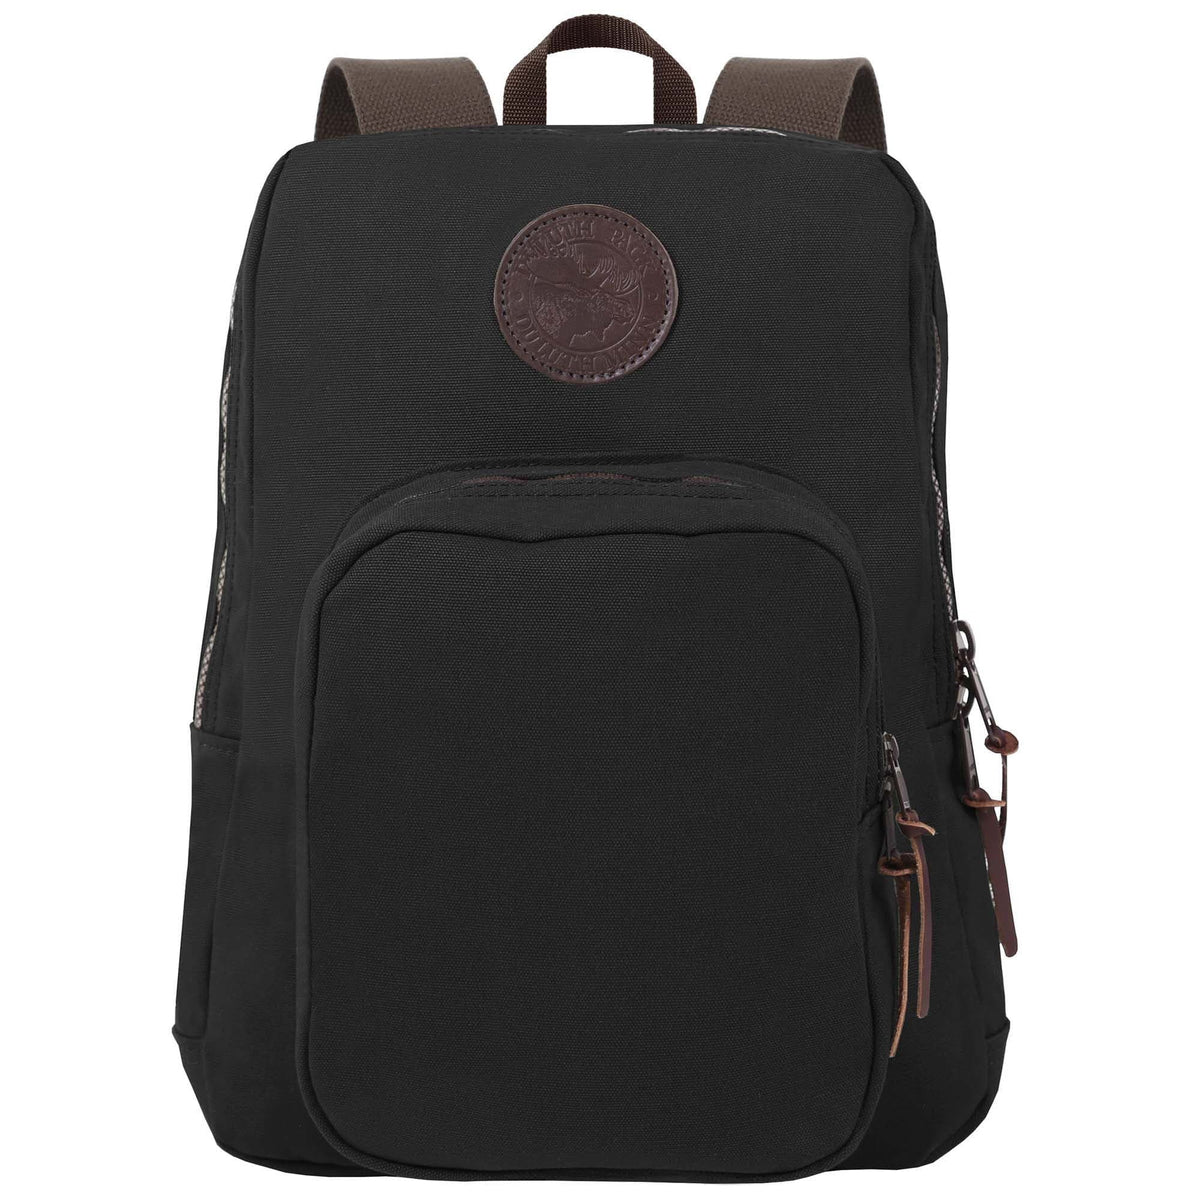 Duluth Pack Large Standard Backpack Bag